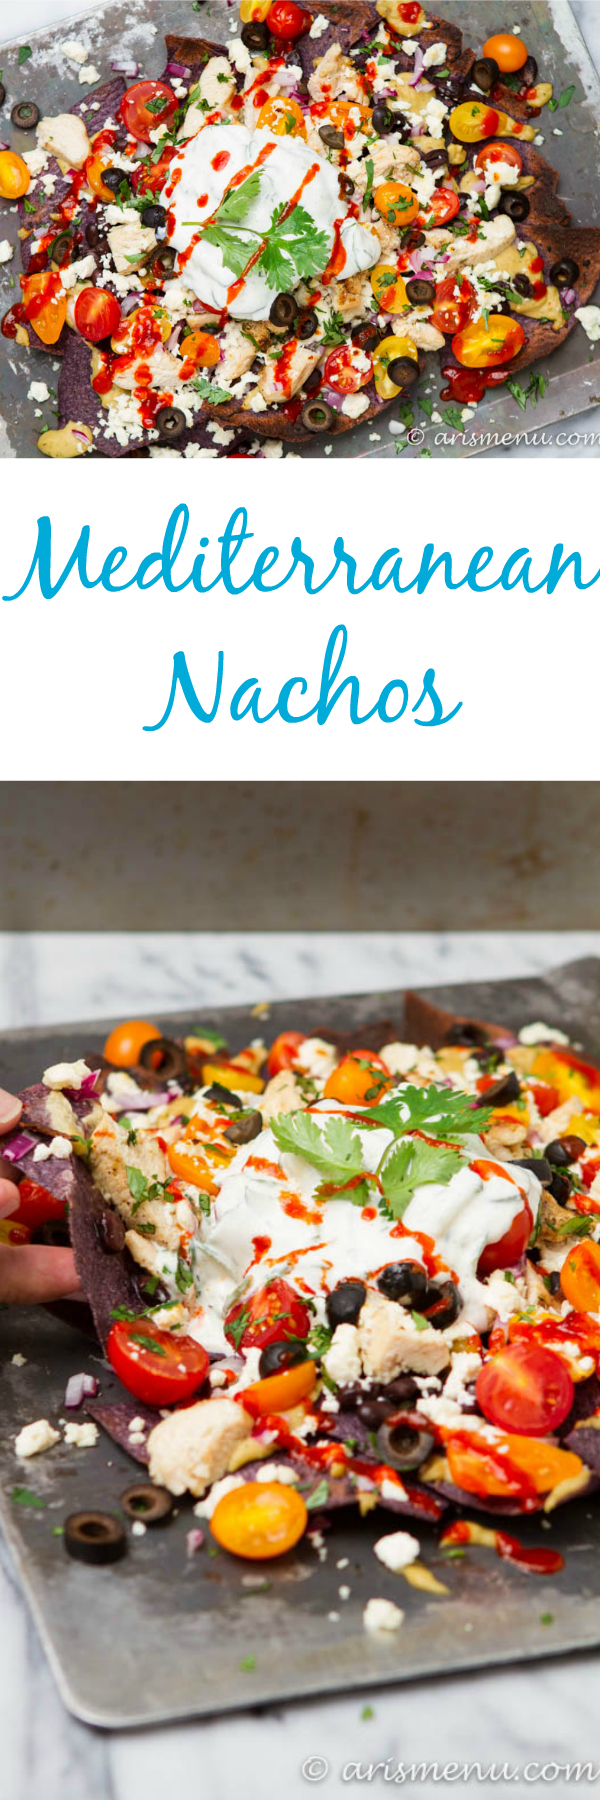 Mediterranean Nachos: Taking comfort food to the next level with this Mediterranean inspired twist!